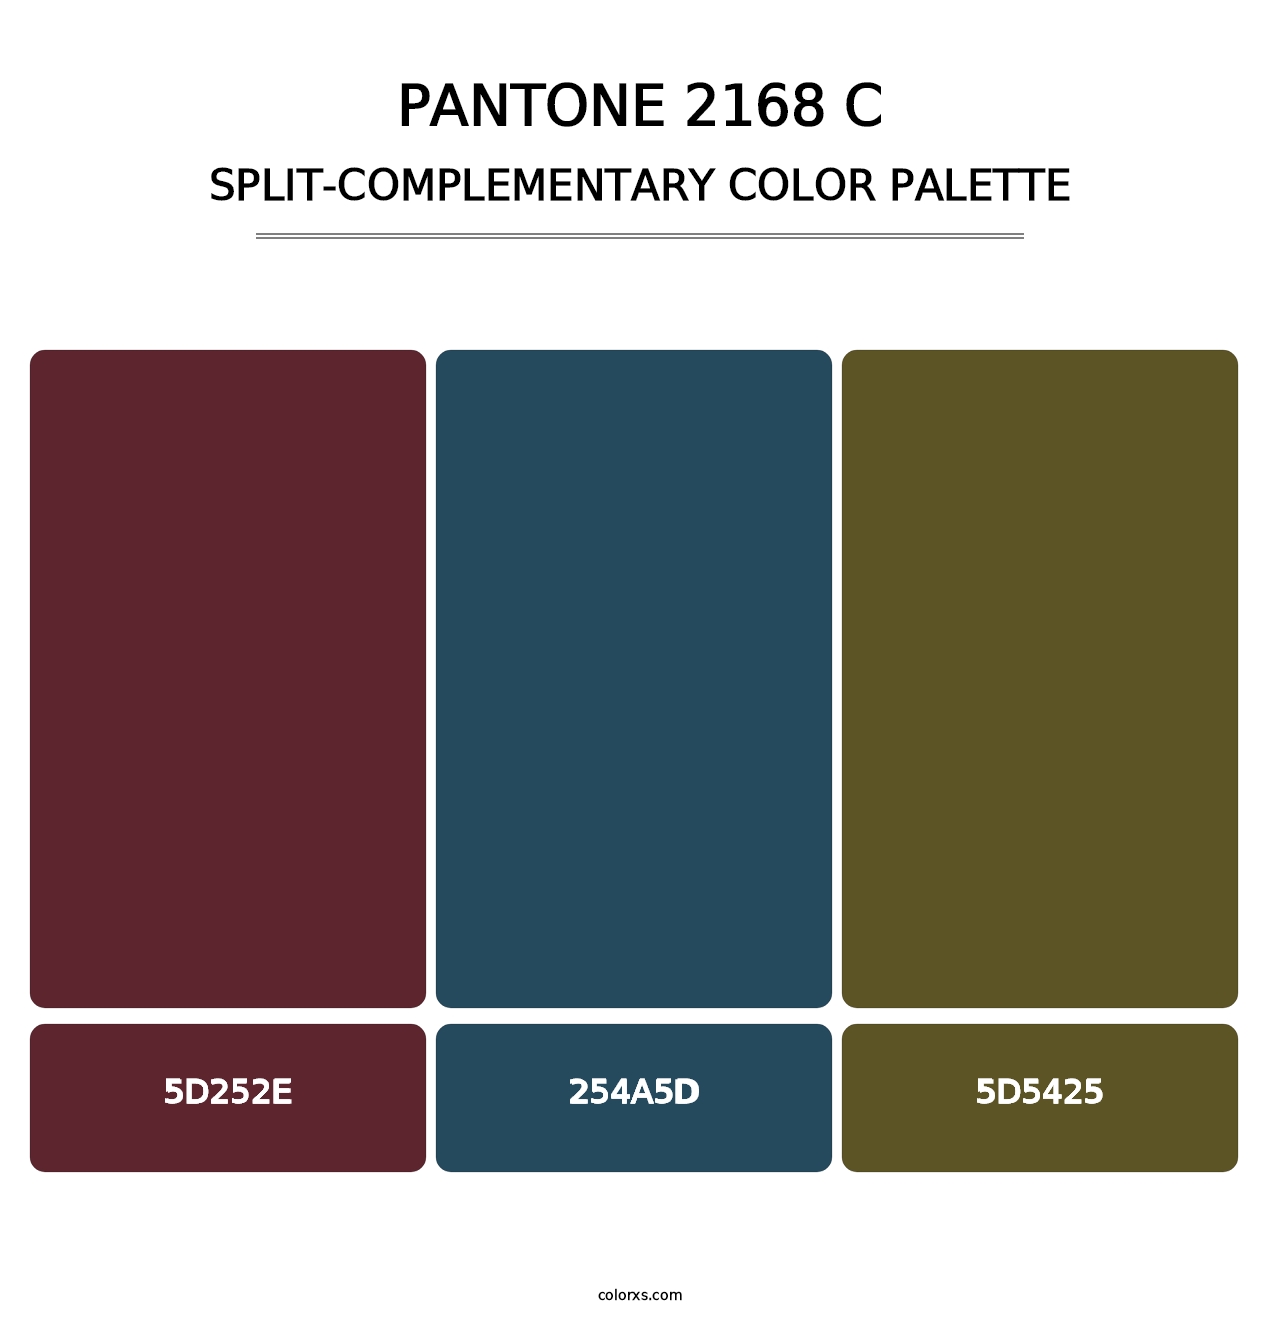 PANTONE 2168 C - Split-Complementary Color Palette